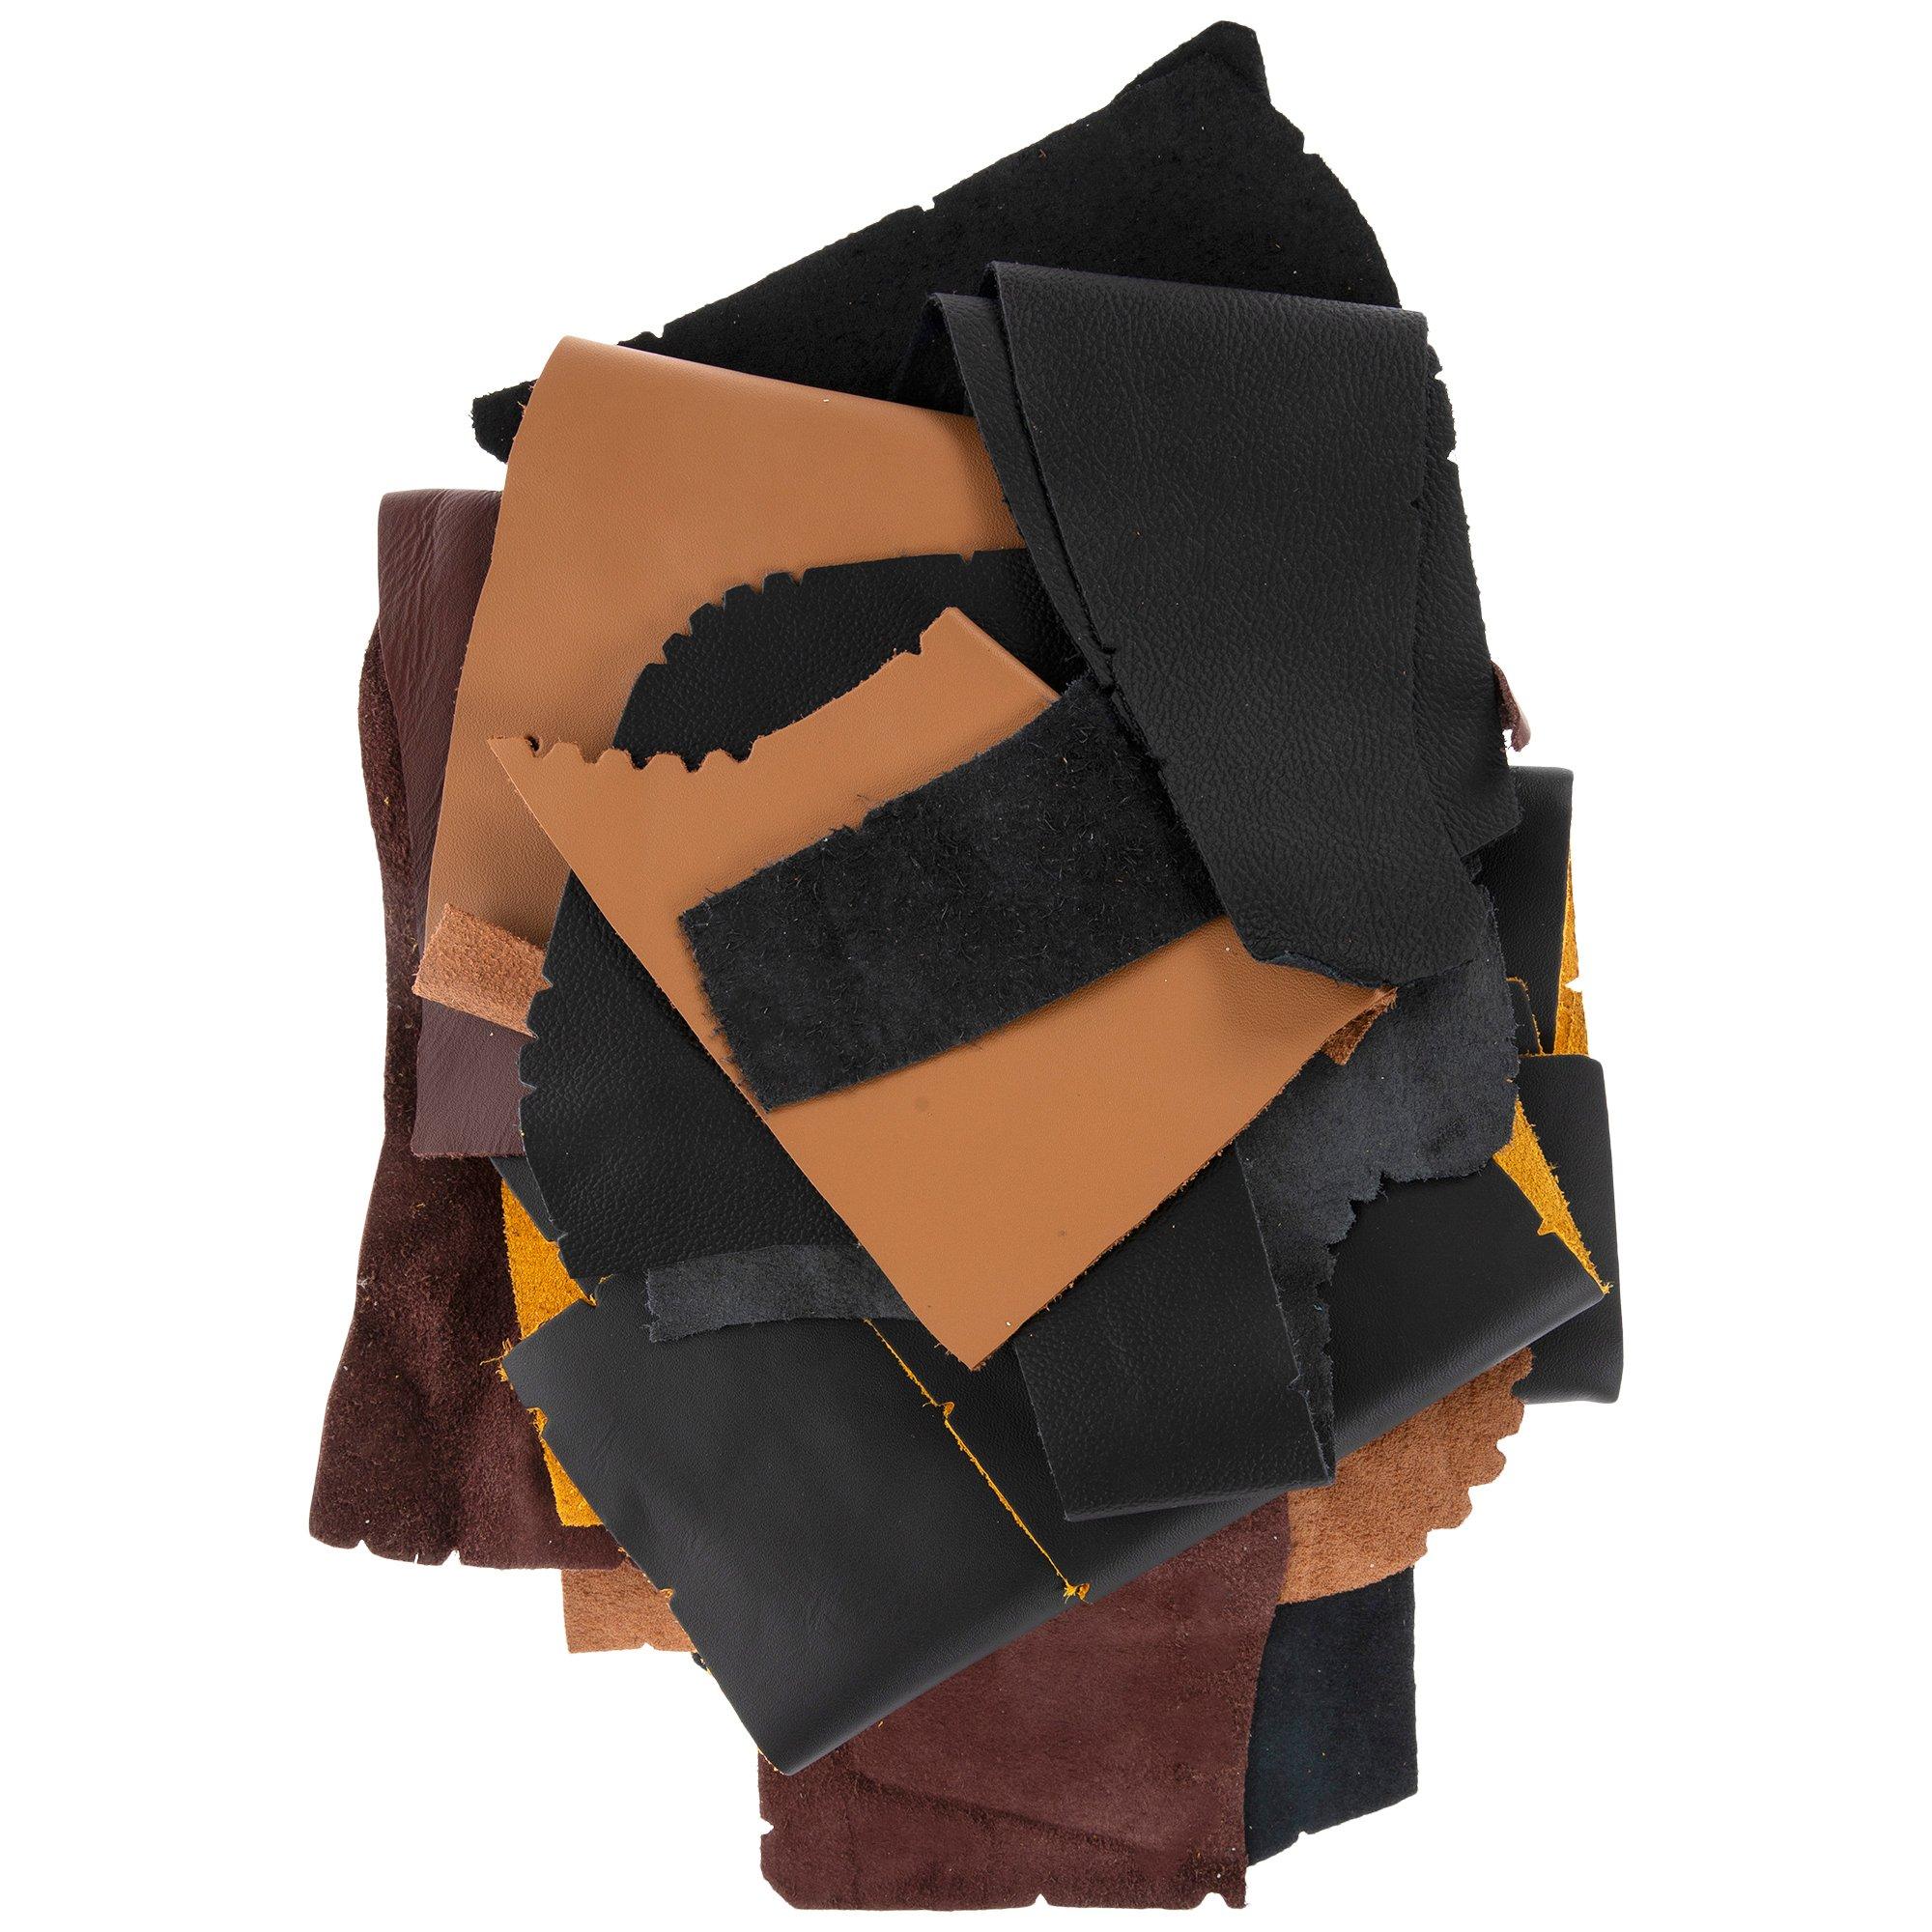  Premium Genuine Leather Scraps - Large Leather Pieces